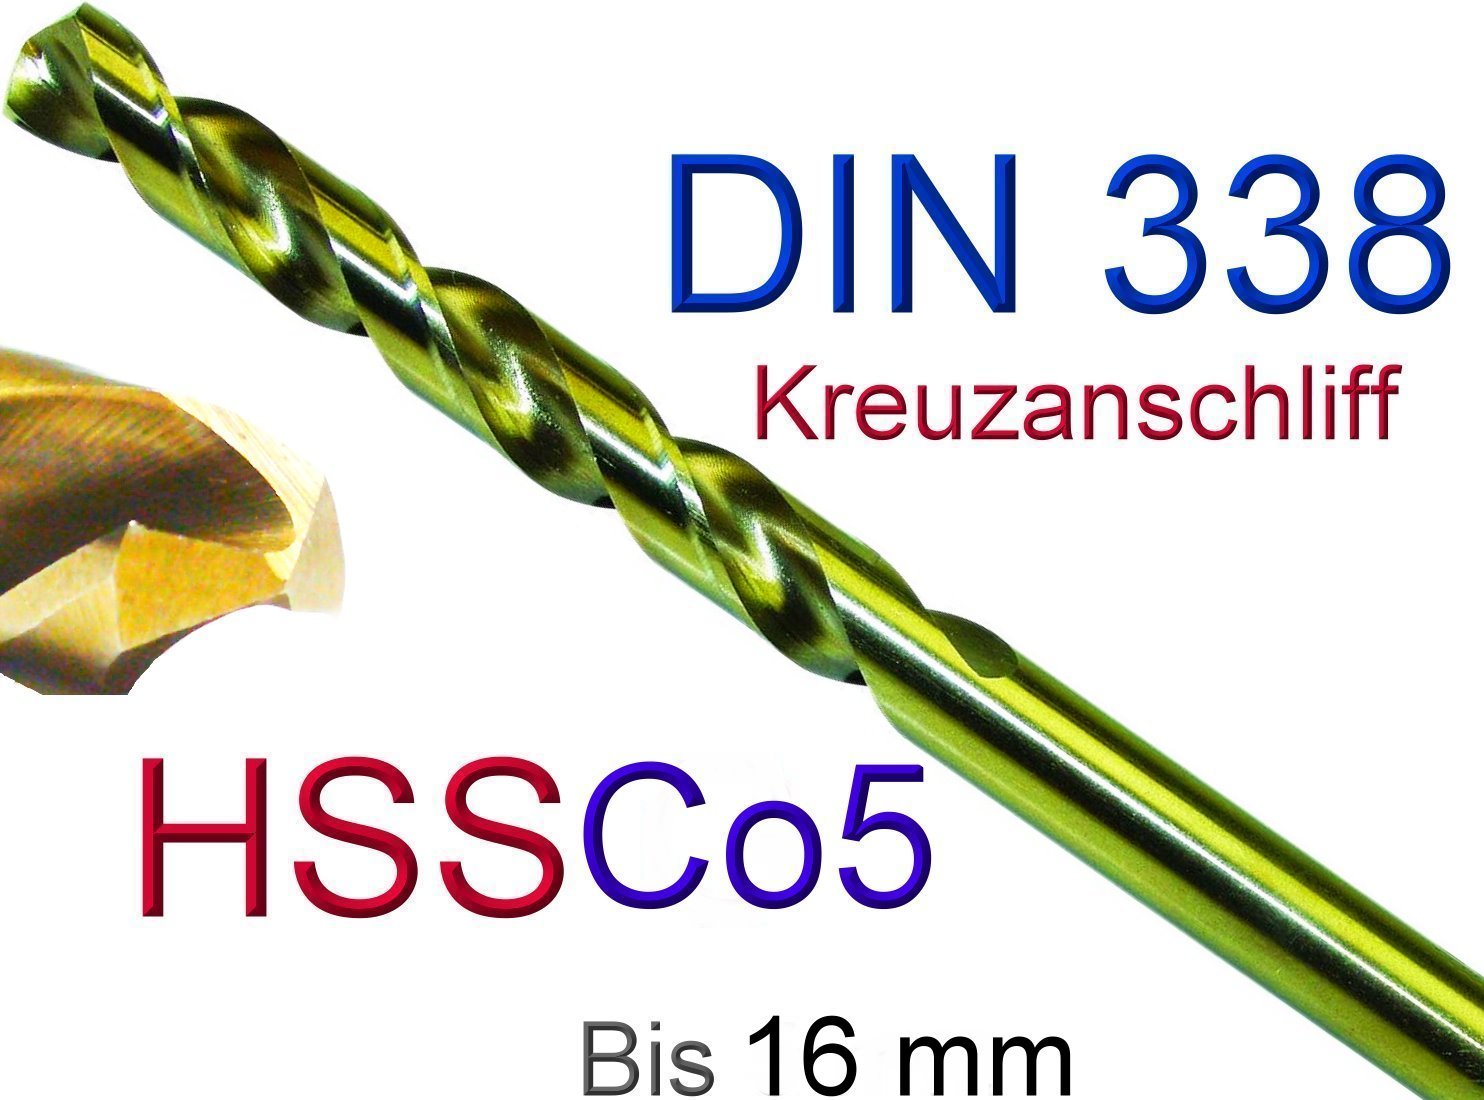 99-teilig.Spiralbohrer 1,5-10,0 Mm Metallbohrer Stahlbohrer HSS Bohrer DIN 338 